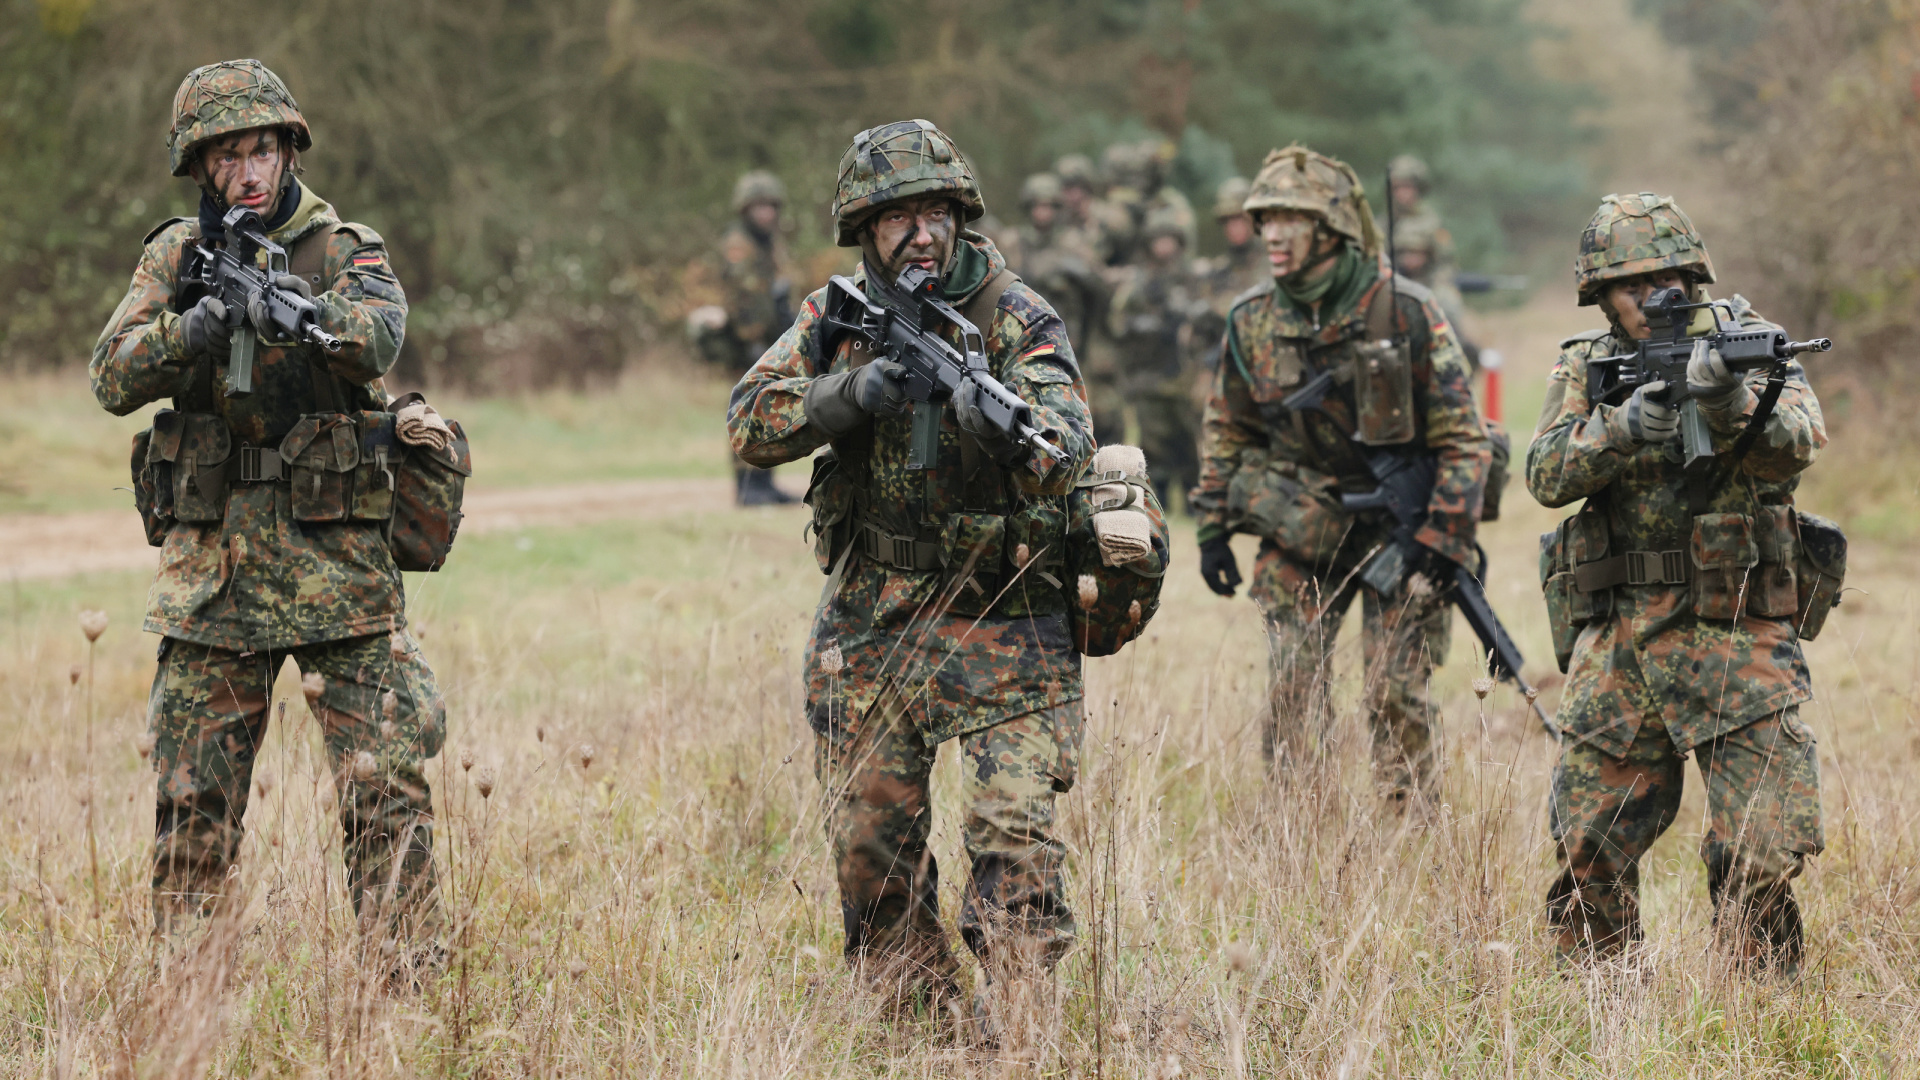 Tercera Guerra Mundial en 2025: lo que dice un supuesto informe filtrado del ejército alemán